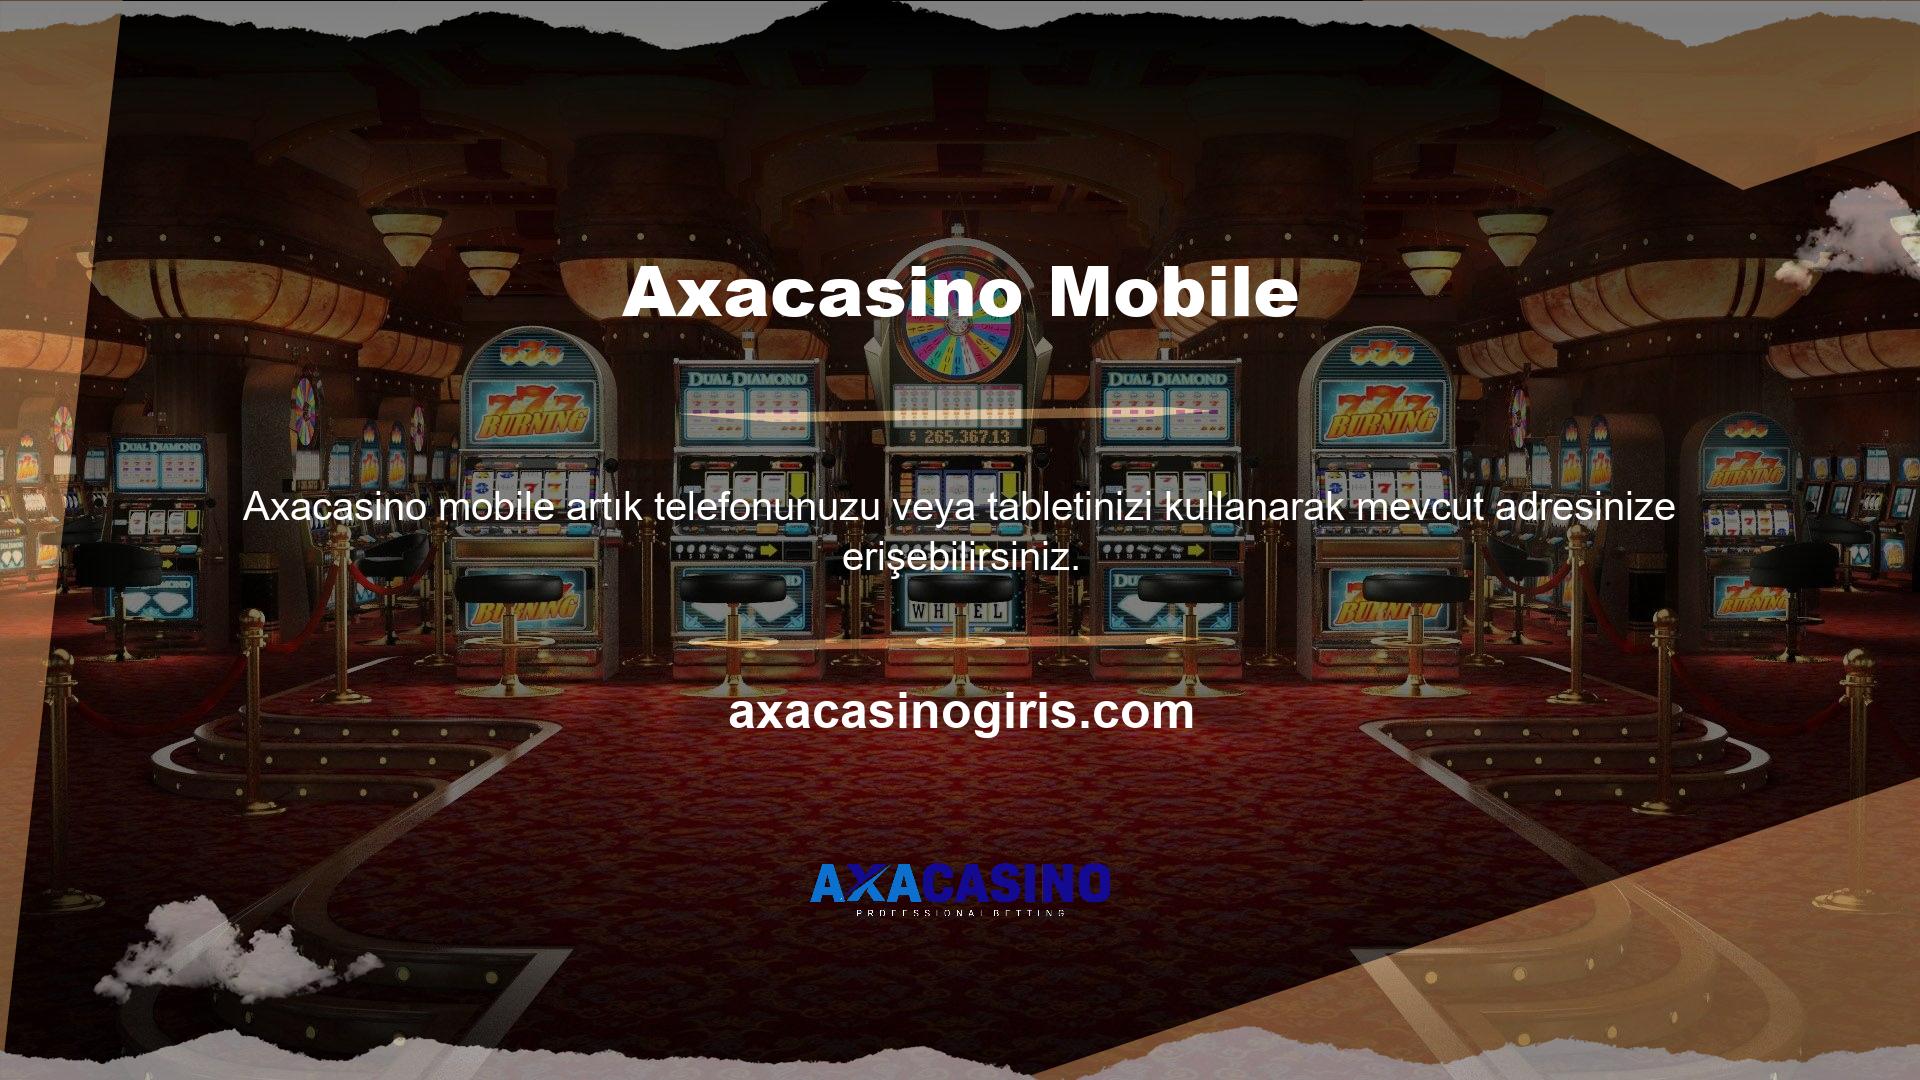 Yöntem, mobil sitelerde bahis oynamayı veya slot makinelerinde, masa oyunlarında ve canlı casinolarda vakit geçirmeyi içerir